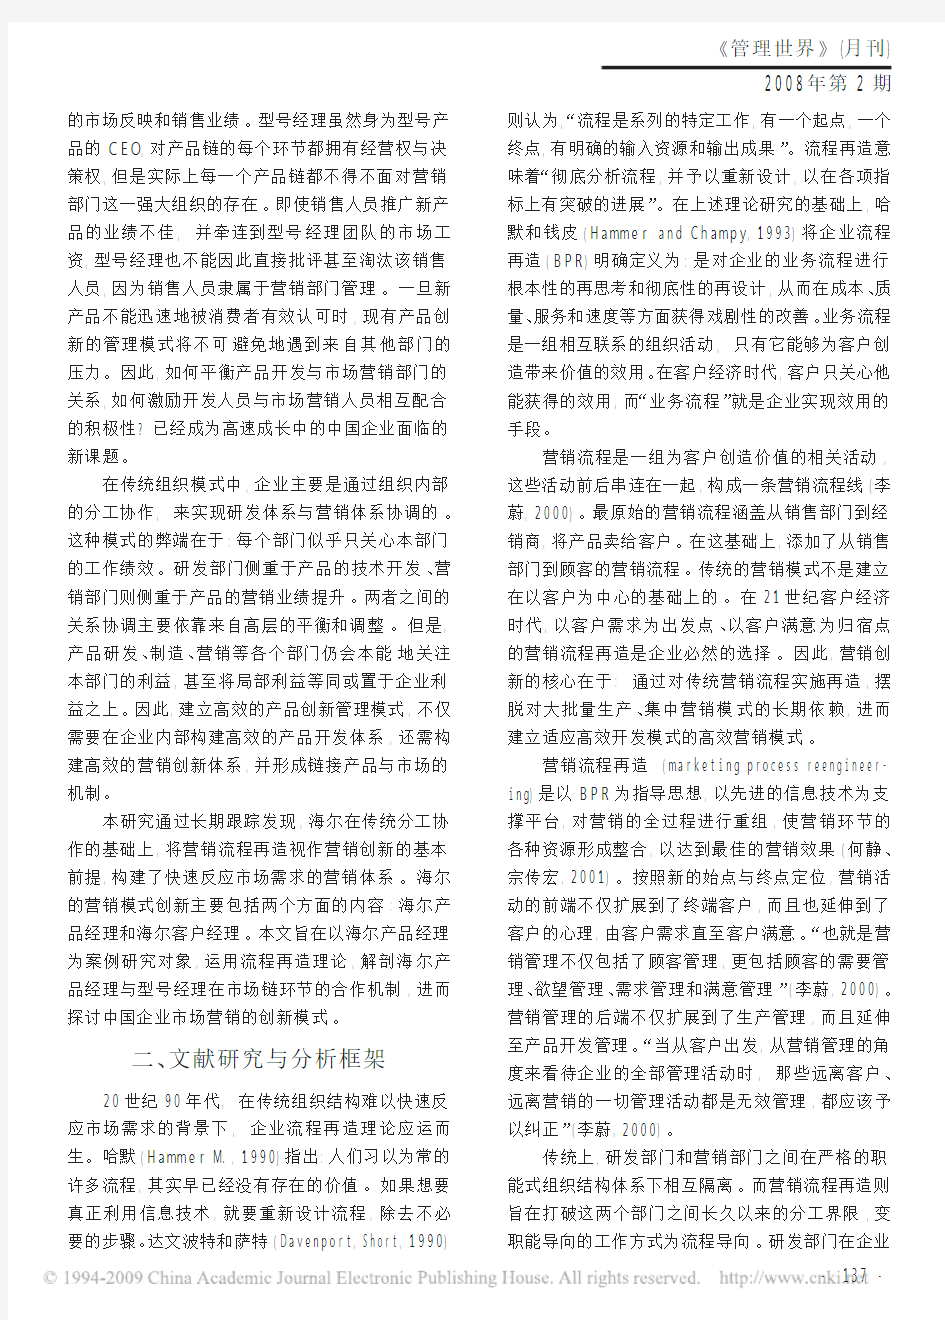 中国企业产品创新管理模式研究_三_以海尔产品经理为案例[1]